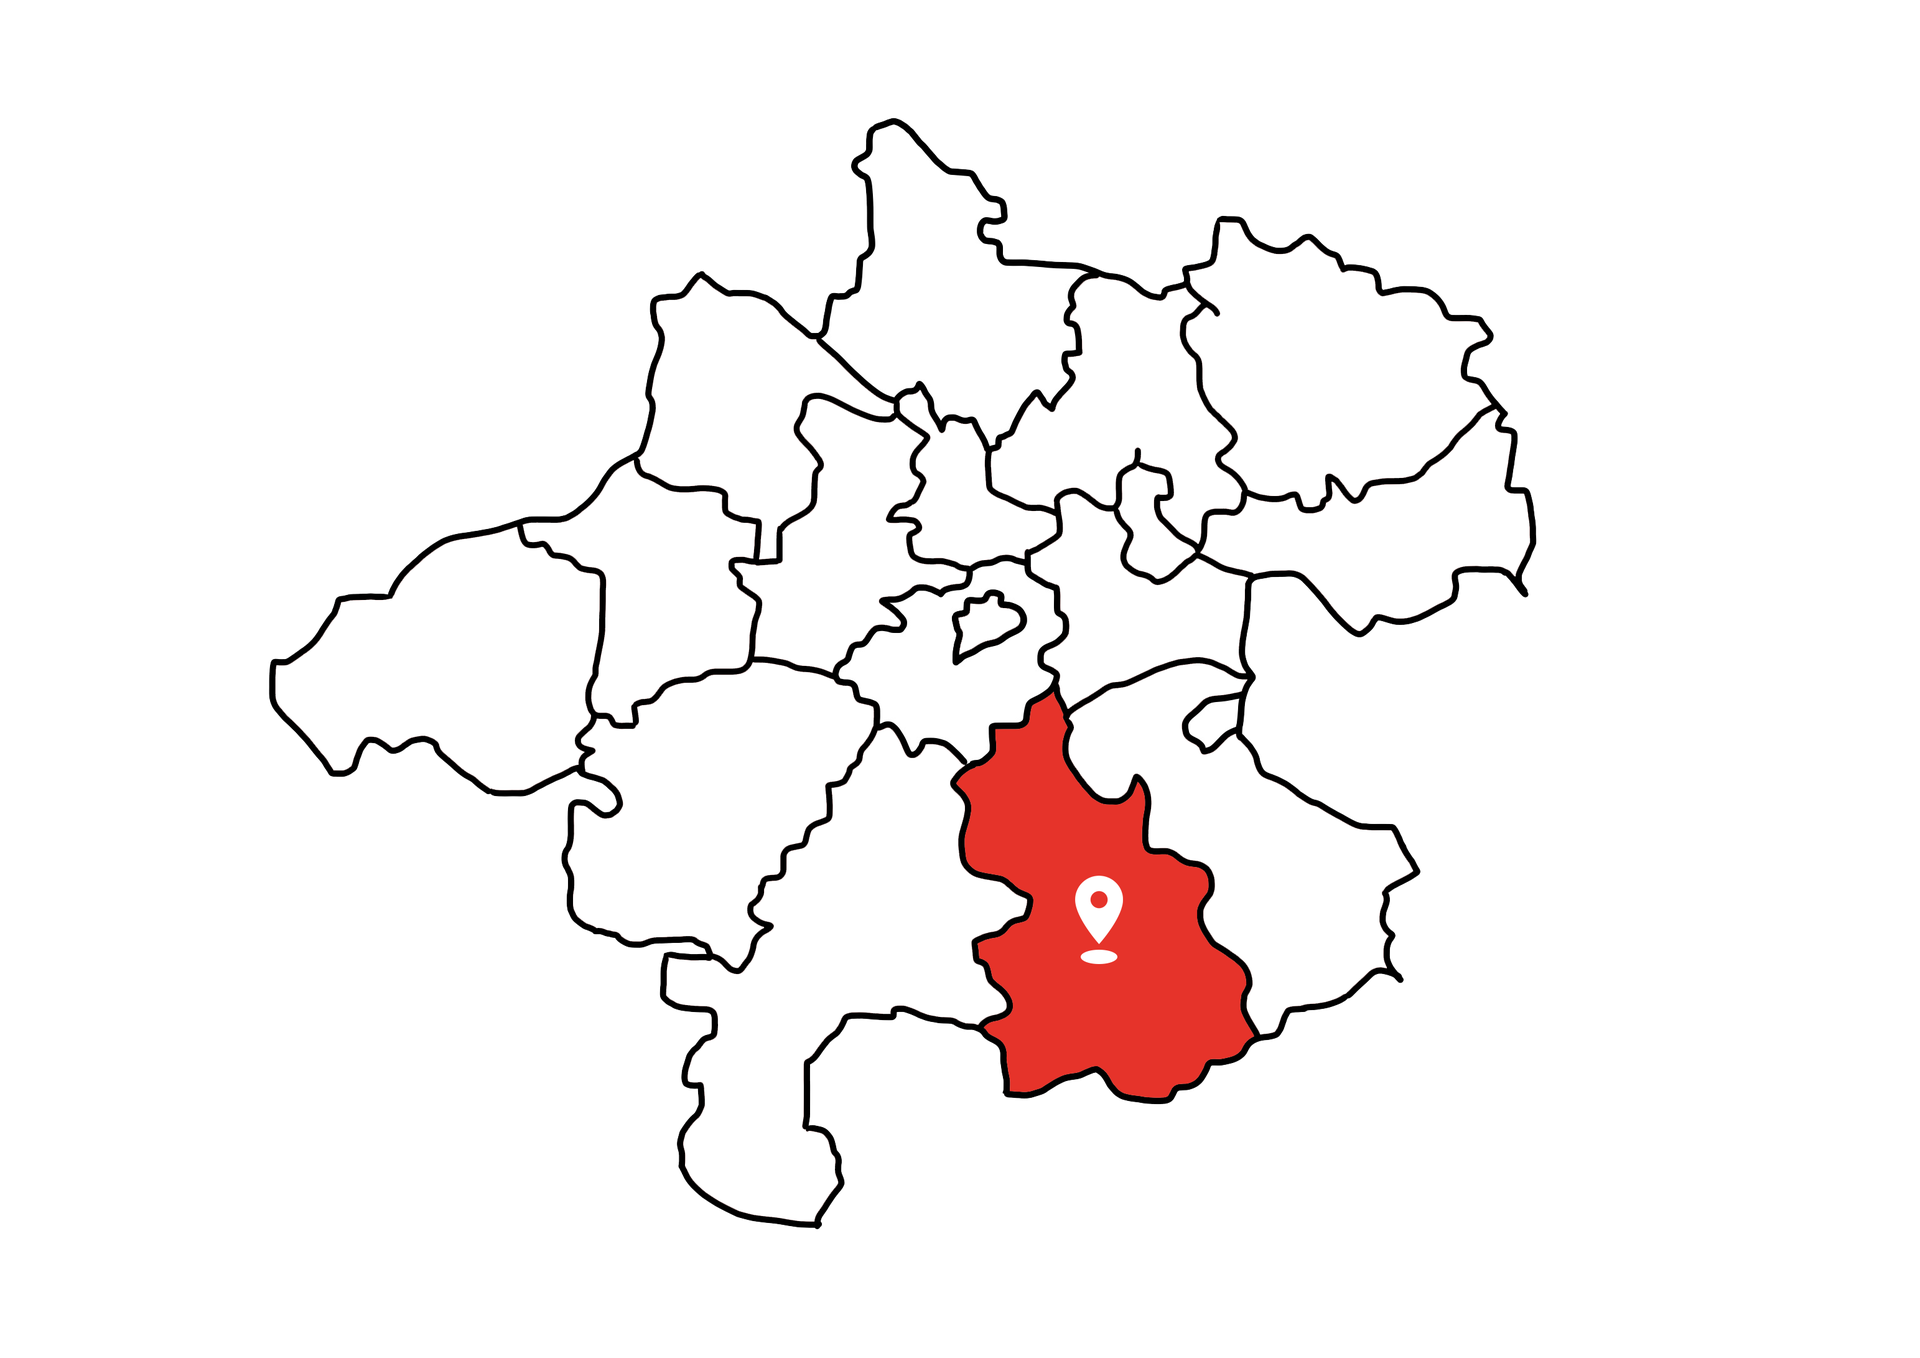 Eine Landkarte die Oberösterreich zeigt. Der Bezirk Kirchdorf ist rot markiert. Die restlichen Bezirke sind weiß.